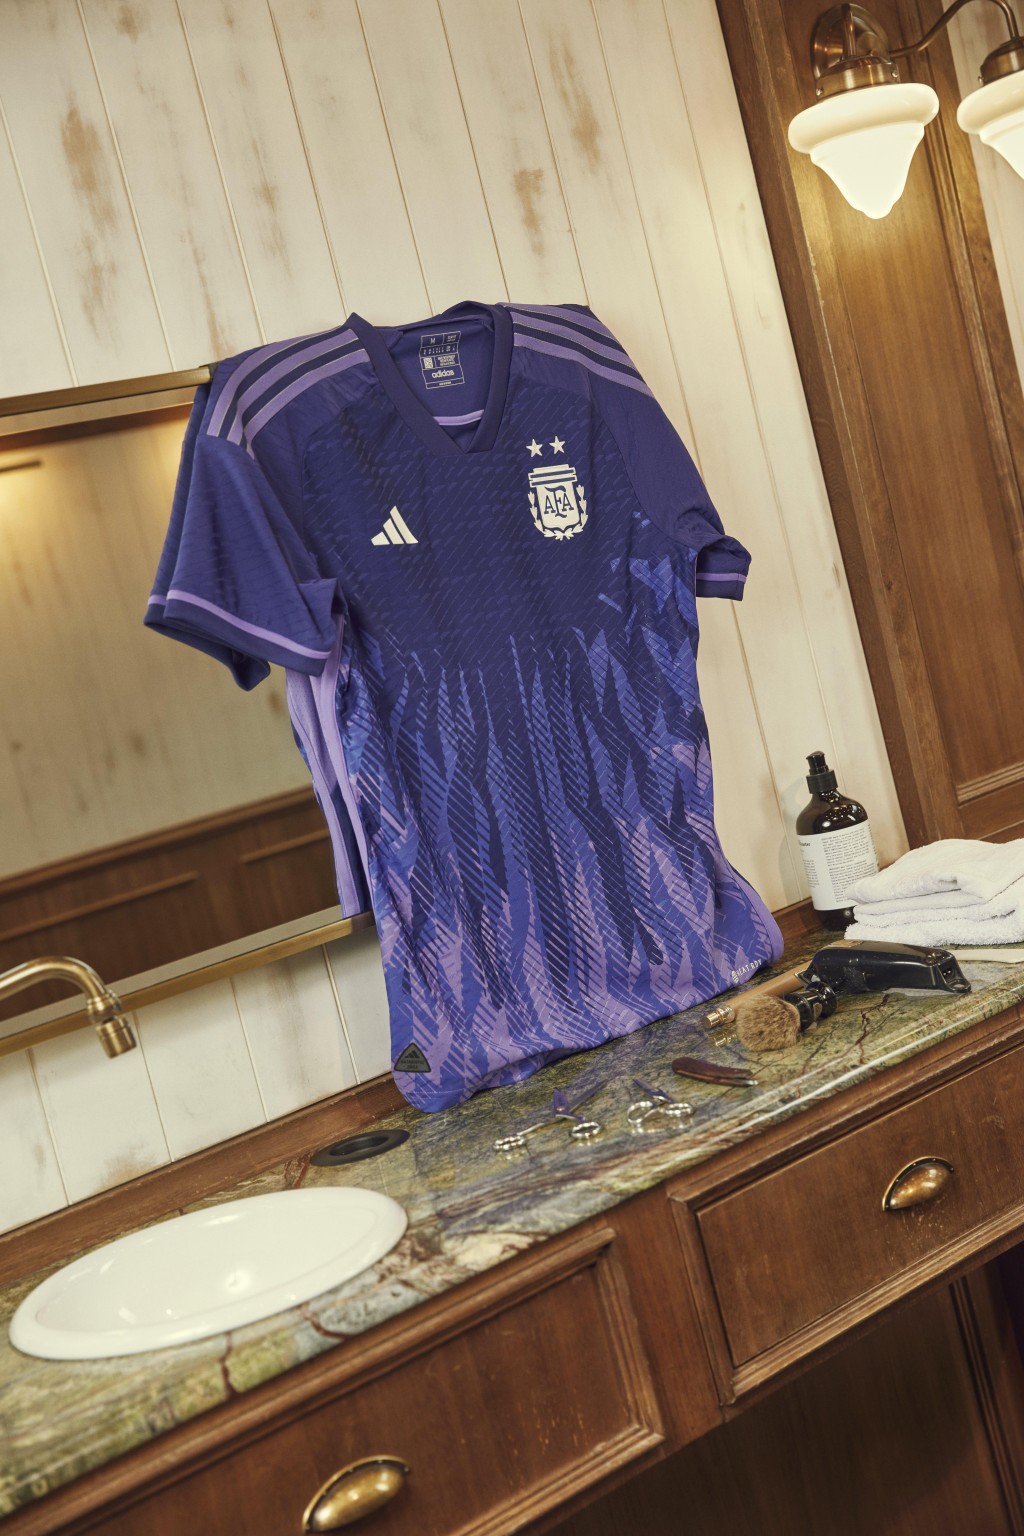 ３）阿根廷 / 作客球衣： 阿根廷作客球衣破格以紫色为基调，火焰状图案取自阿根廷国旗的「五月太阳」元素，把创新与传统元素融合，旨在鼓励球队竭尽全力去拼搏，同时传递对公平性的追求。Adidas图片